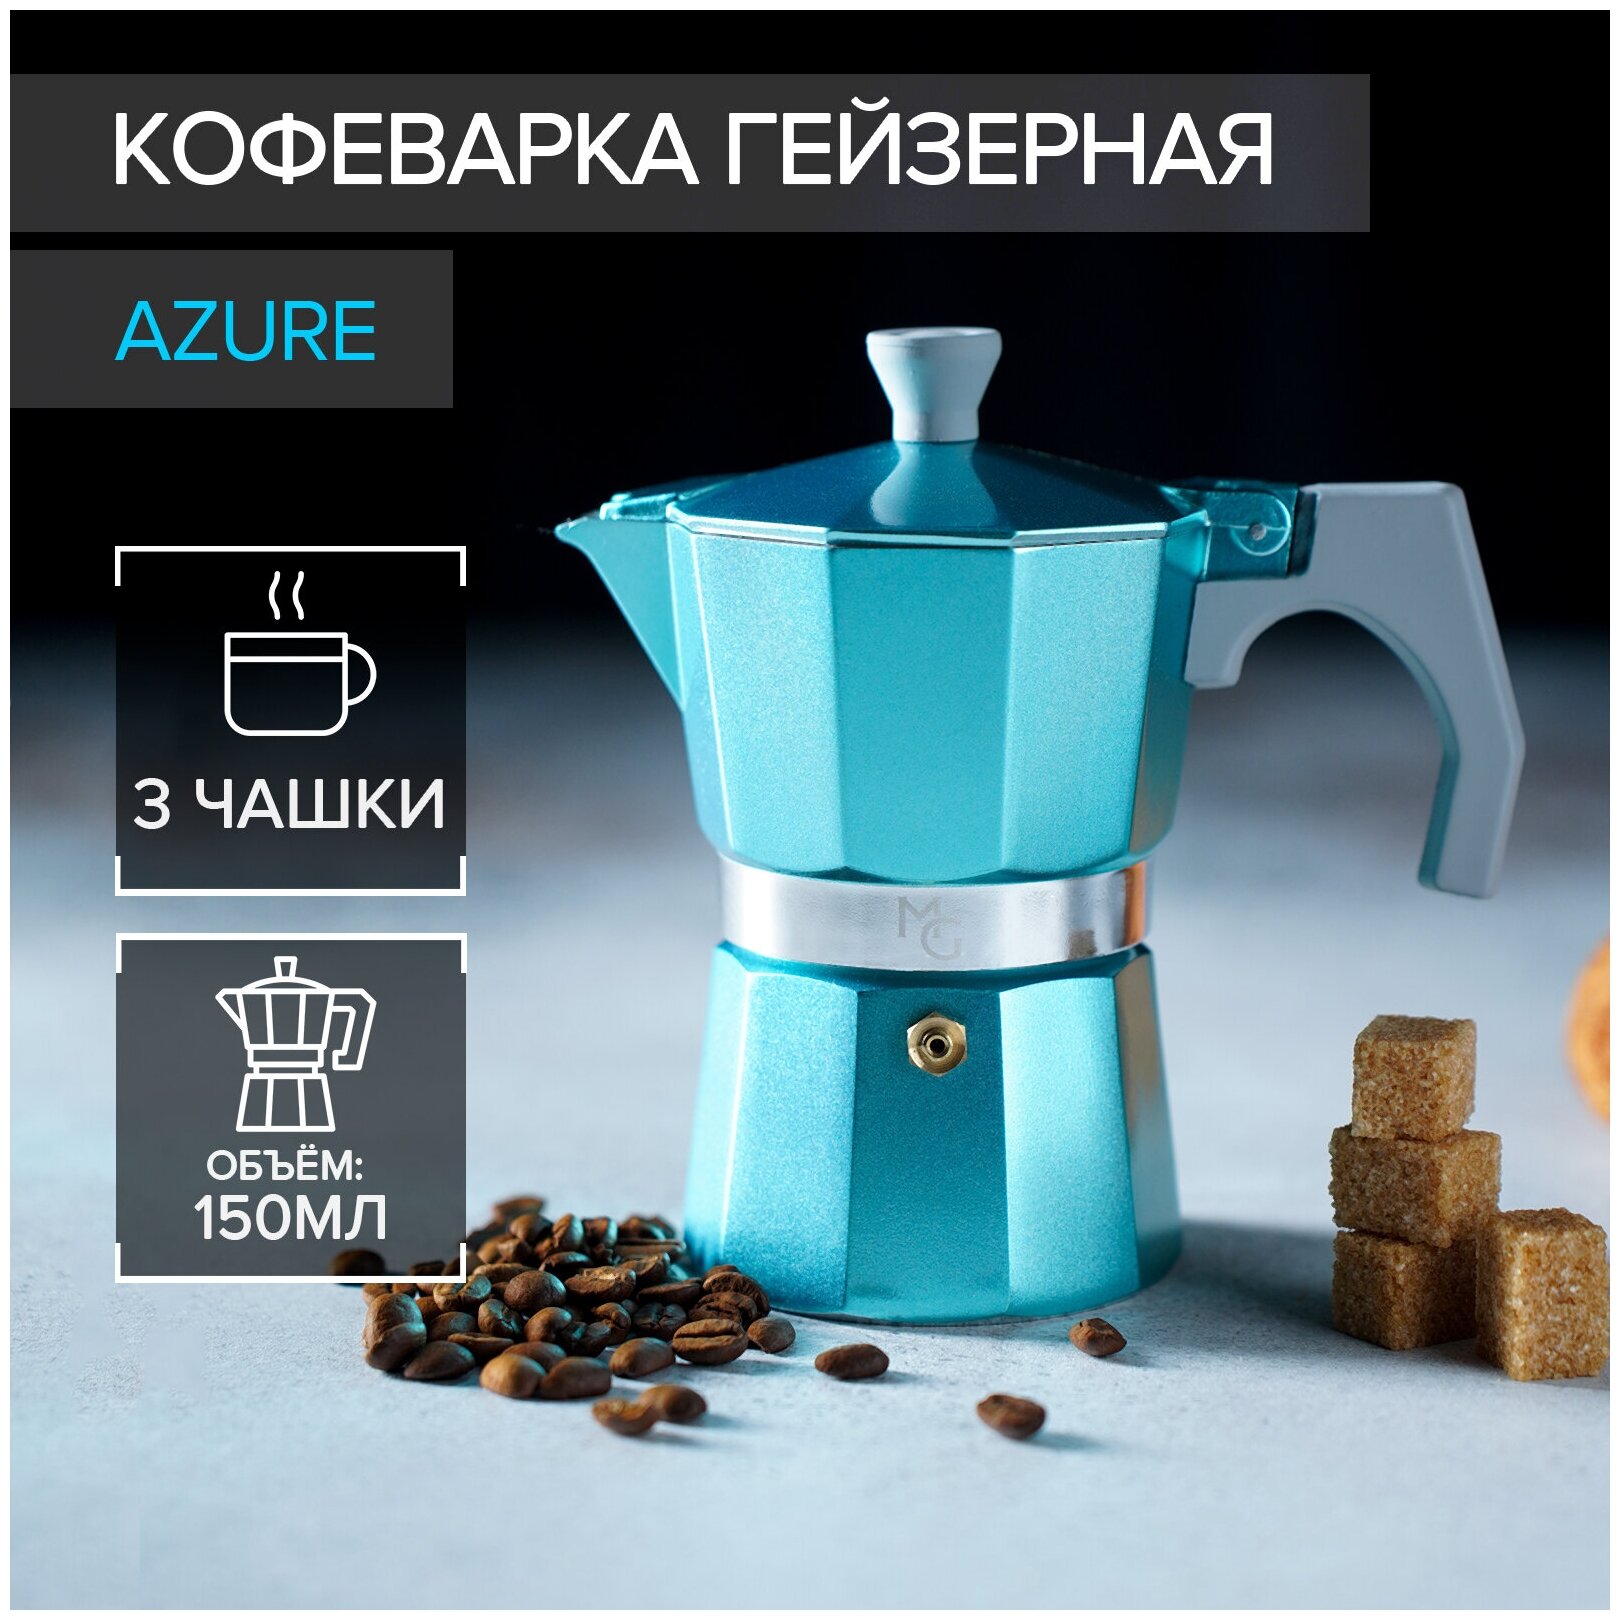 Кофеварка гейзерная Azure на 3 чашки 150 мл